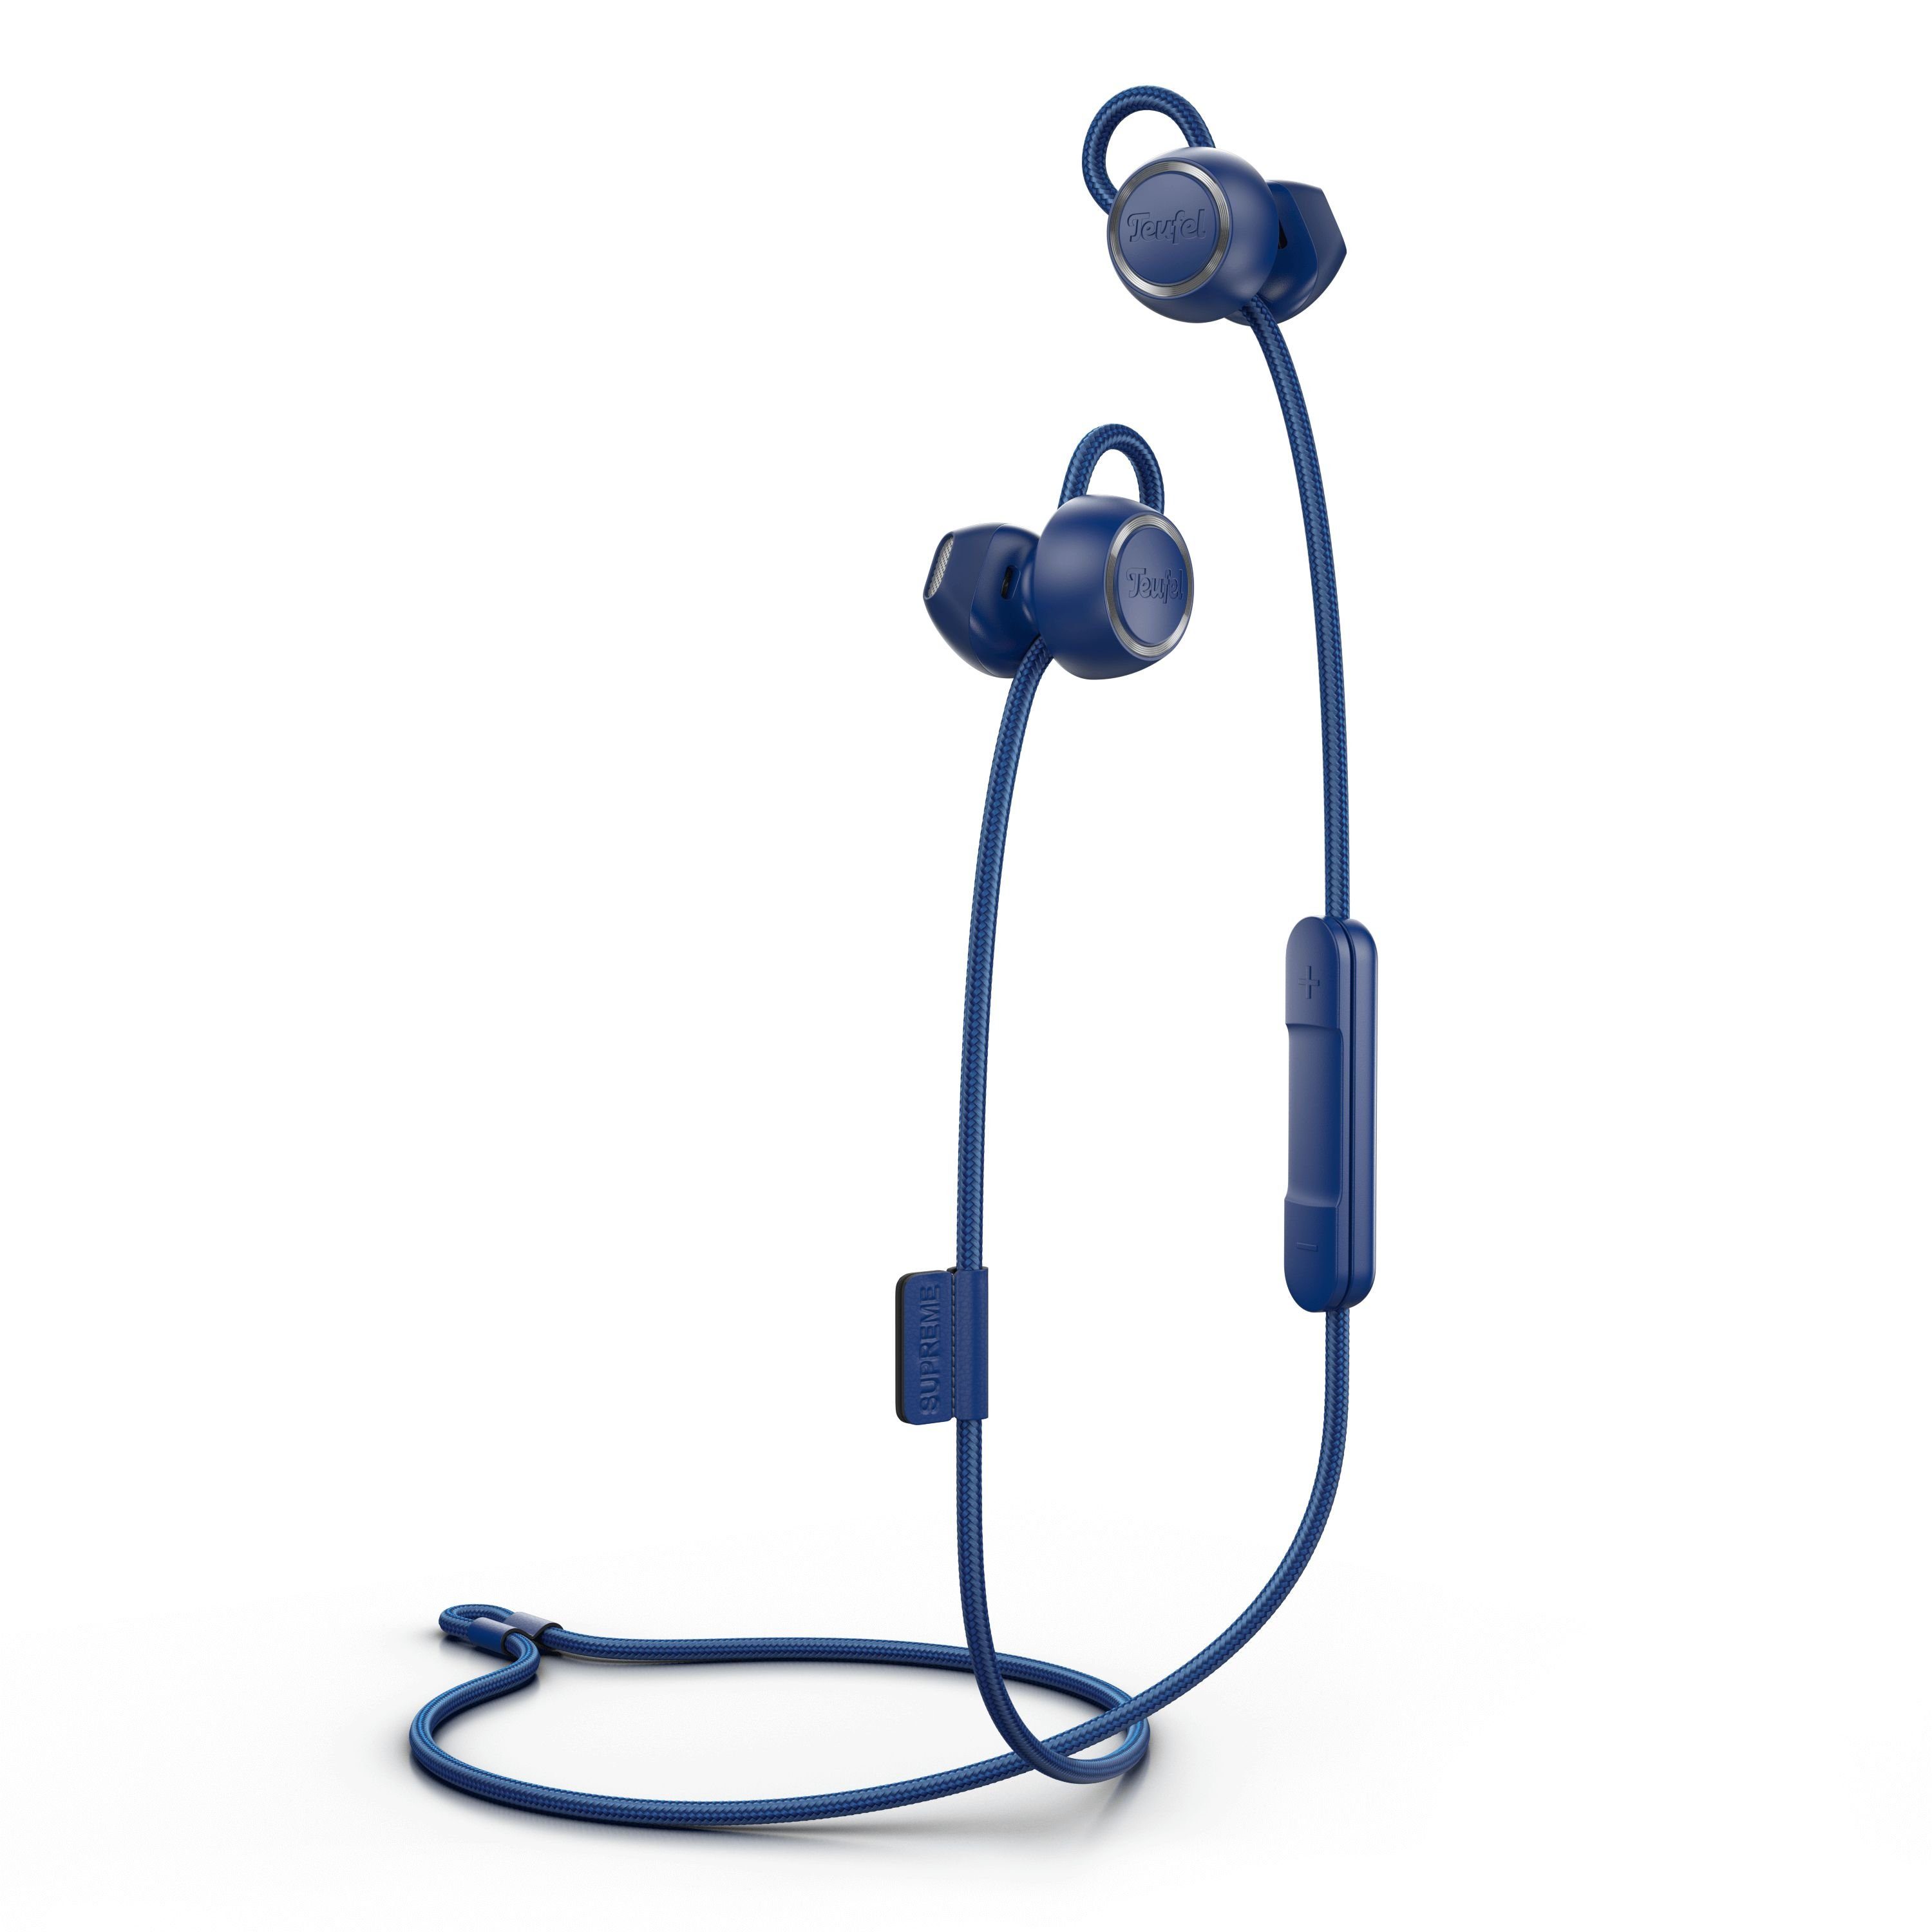 Teufel SUPREME IN Bluetooth-Kopfhörer (Freisprecheinrichtung mit Qualcomm, EQ, ShareMe- und weitere Einstellungen über die Teufel Headphones App möglich) Space Blue